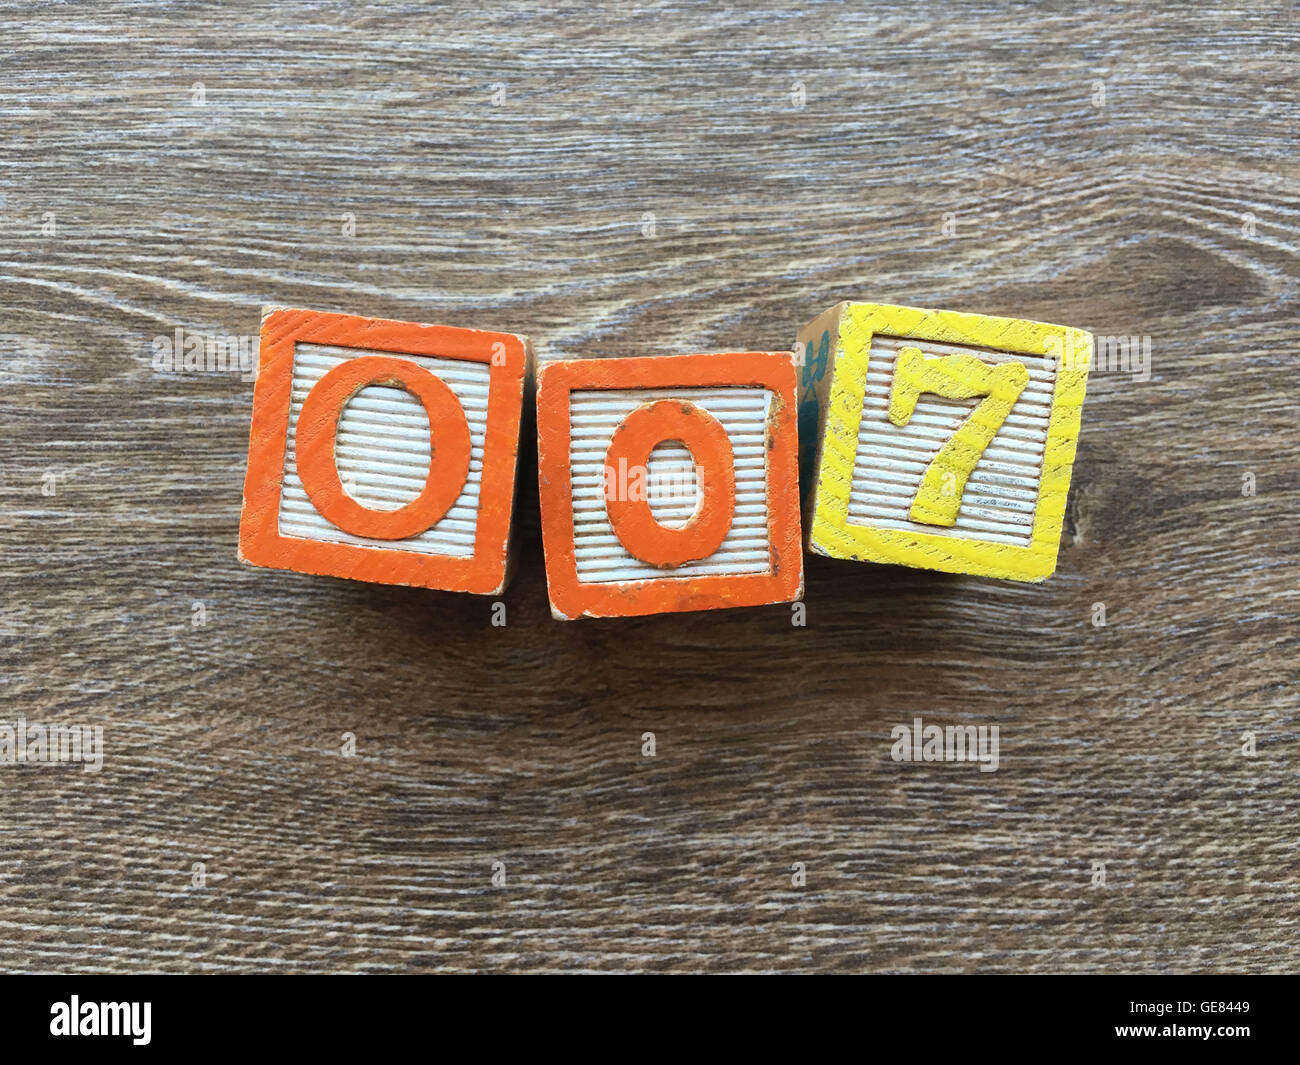 Des cales de bois ou des cubes en bois jouets avec lettres de l'alphabet sur ces combinés ensemble pour créer le nombre 007 Banque D'Images